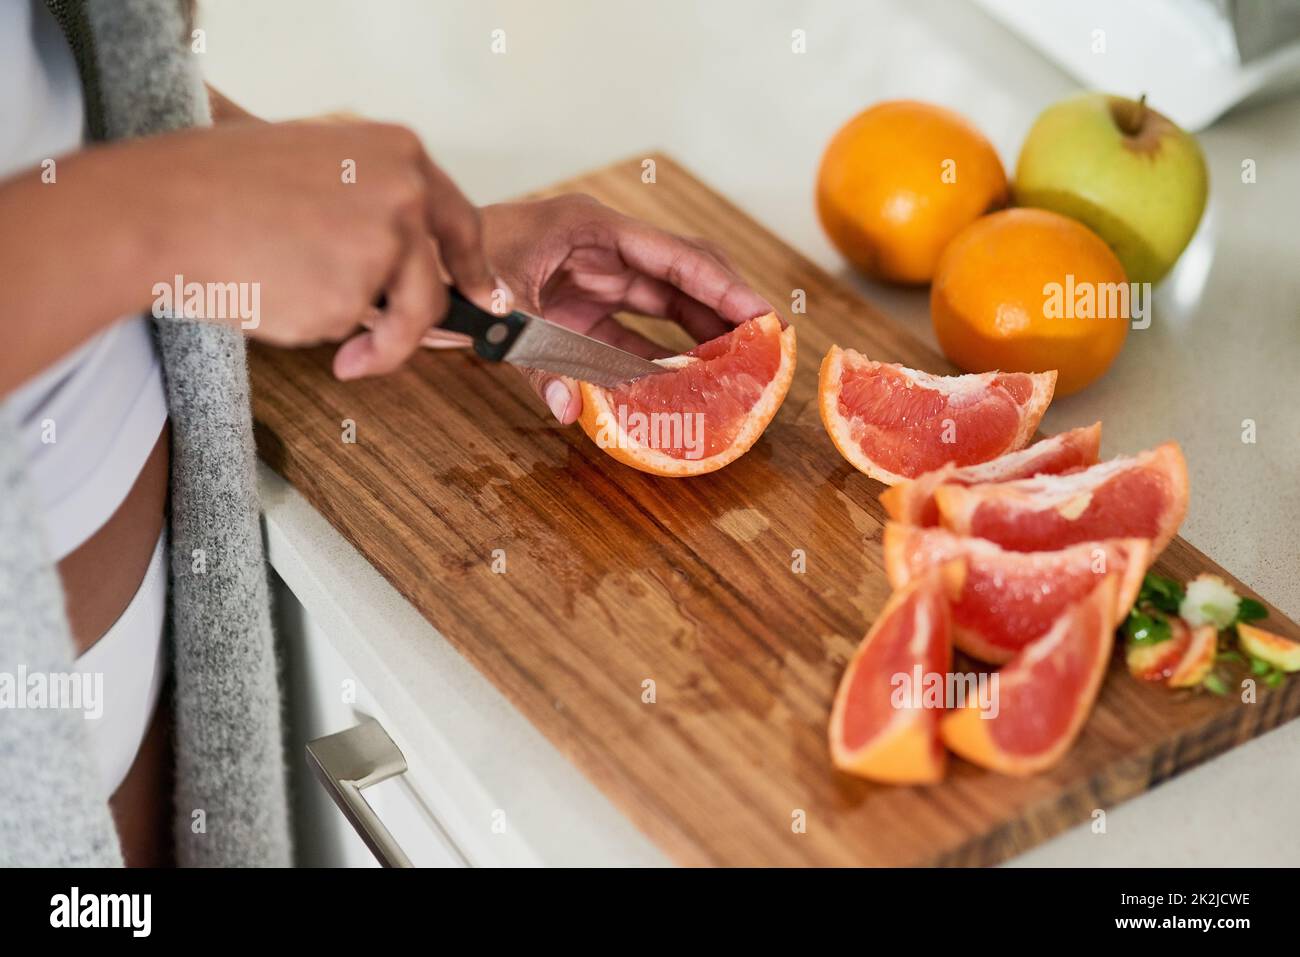 Mangez sainement, soyez heureux. Prise de vue d'une femme non identifiable coupant des fruits pour le petit déjeuner dans sa cuisine à la maison. Banque D'Images